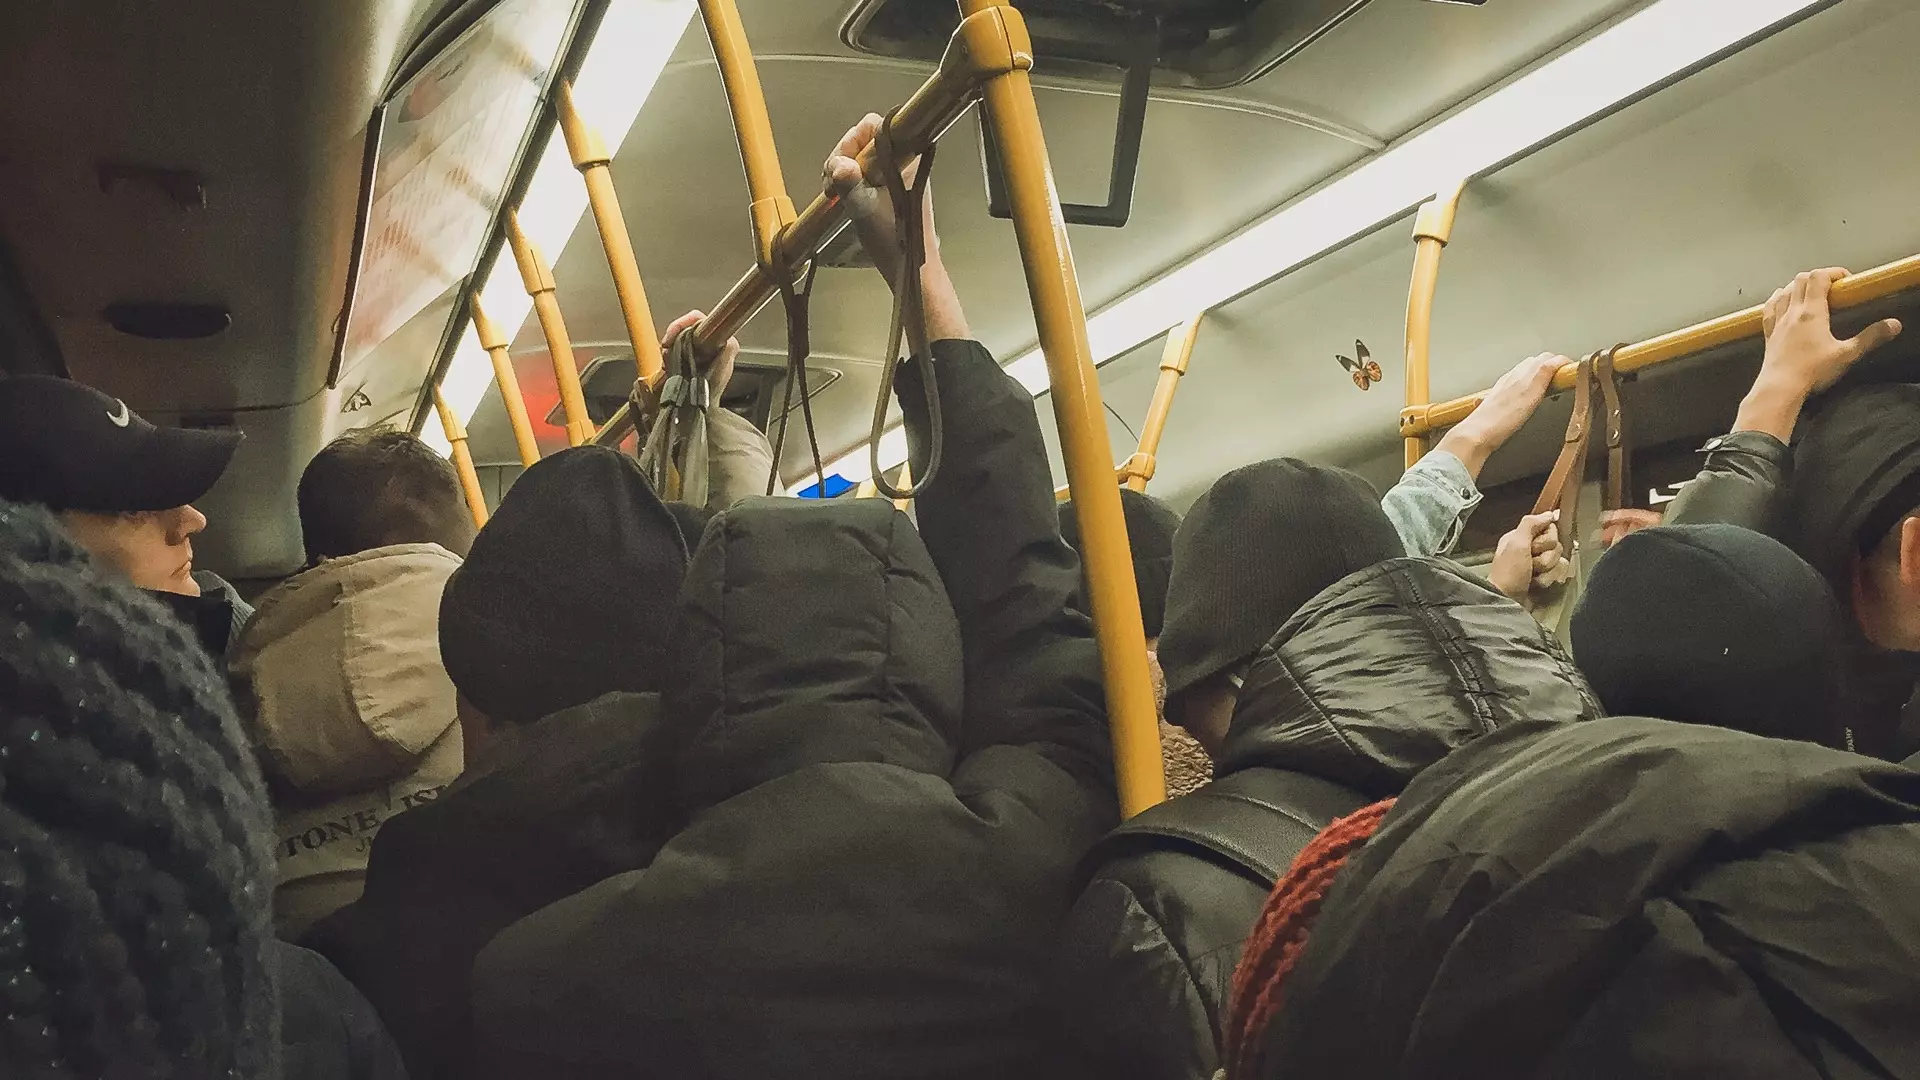 Казанцы проводят в общественном транспорте 18,3 минуты — опрос